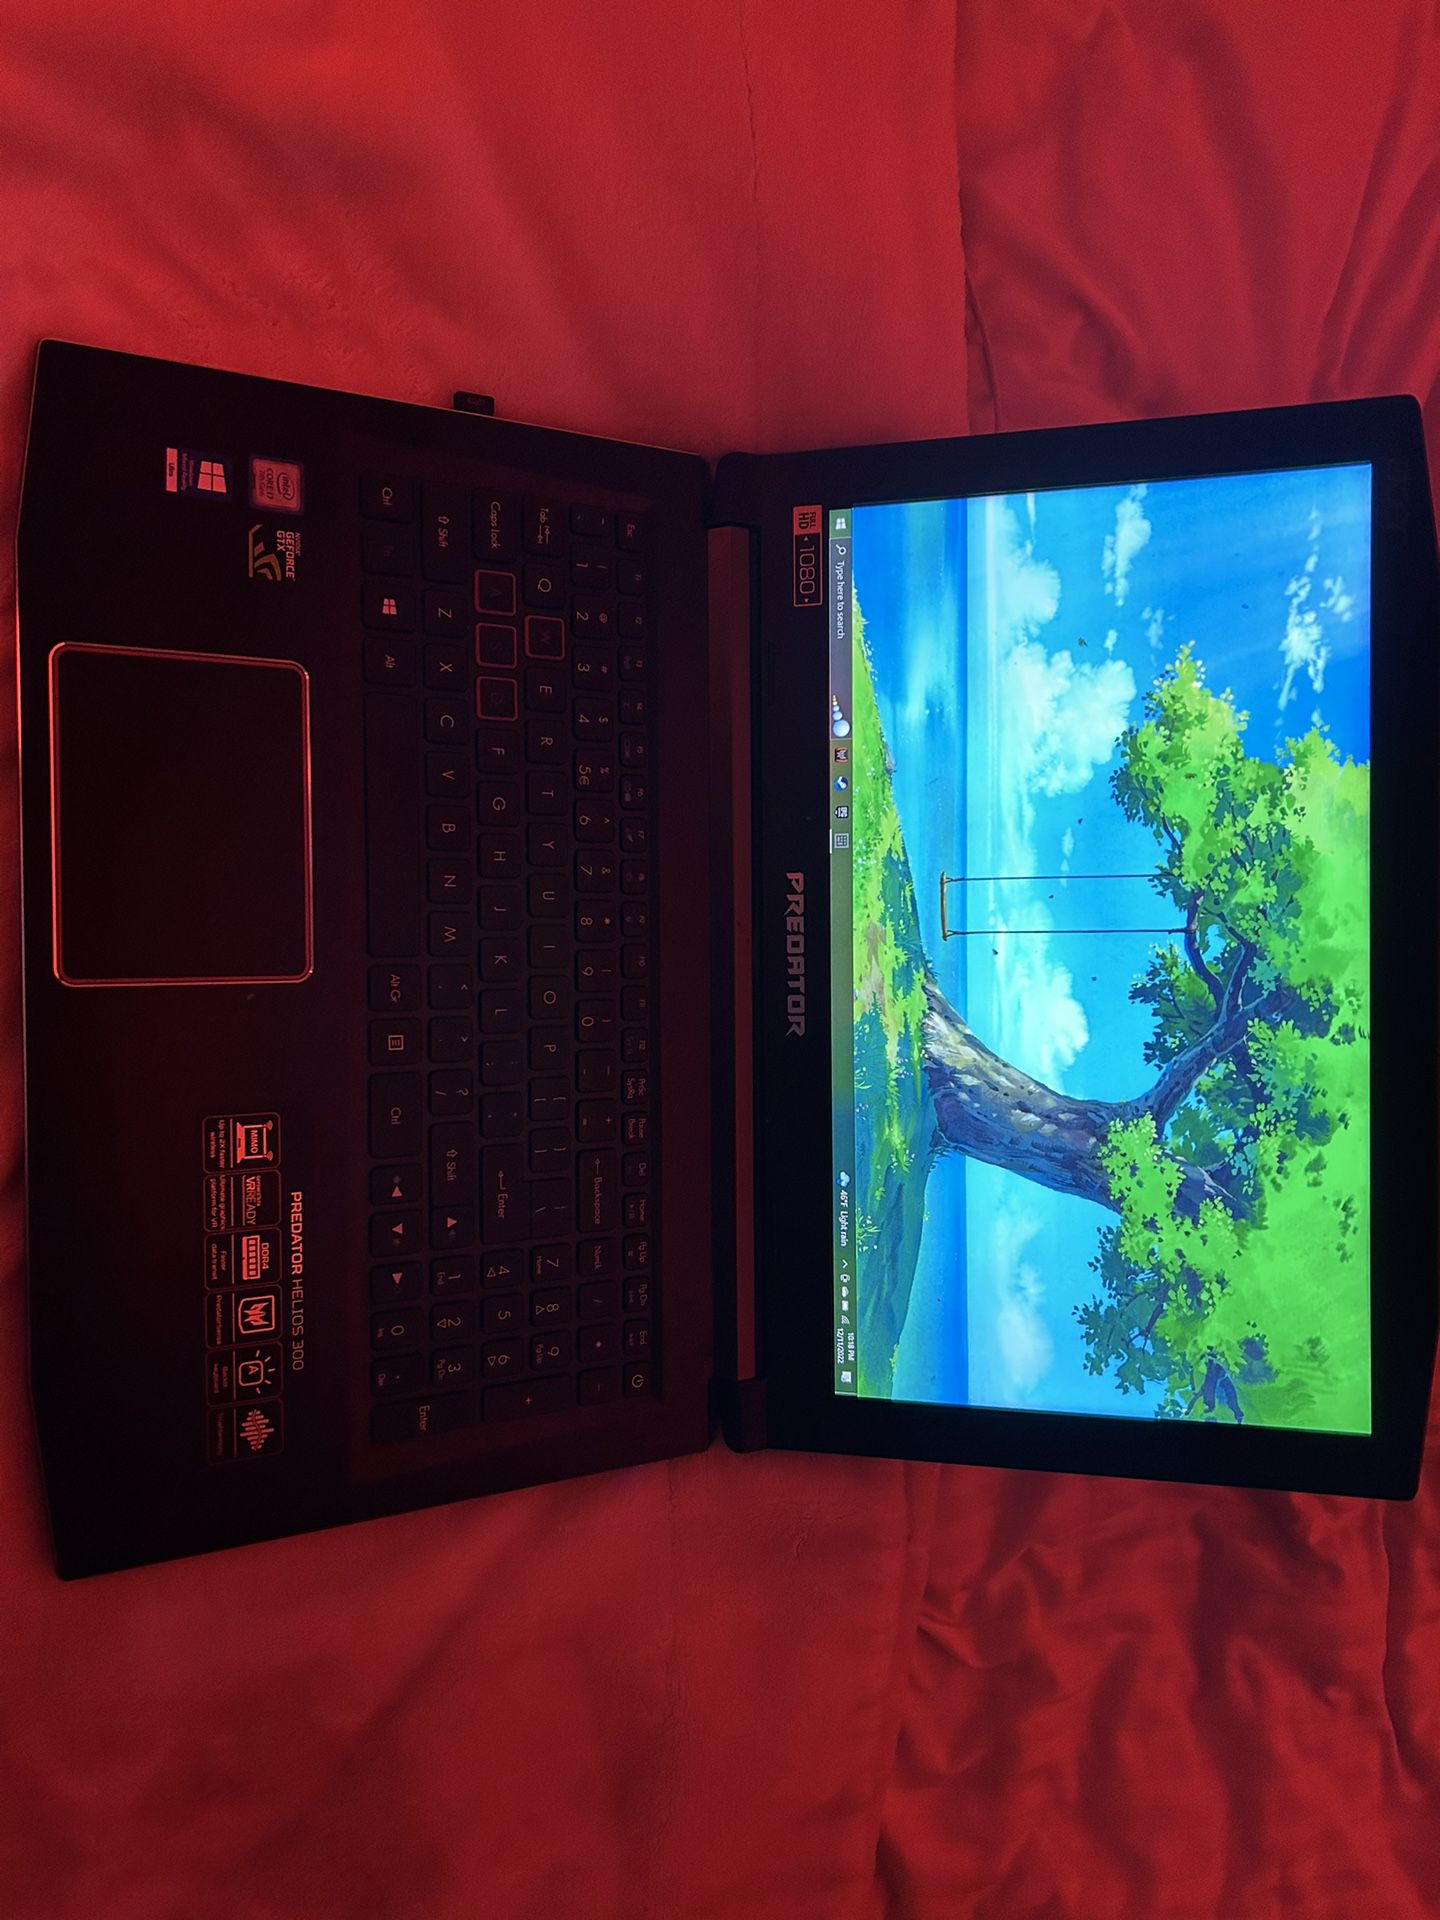 Acer Predator Helios 300 Gaming Laptop, 15.6 Full HD IPS, Intel i7 CPU,  16GB DDR4 RAM, 256GB SSD, GeForce GTX 1060-6GB, VR Ready, Red Backlit KB